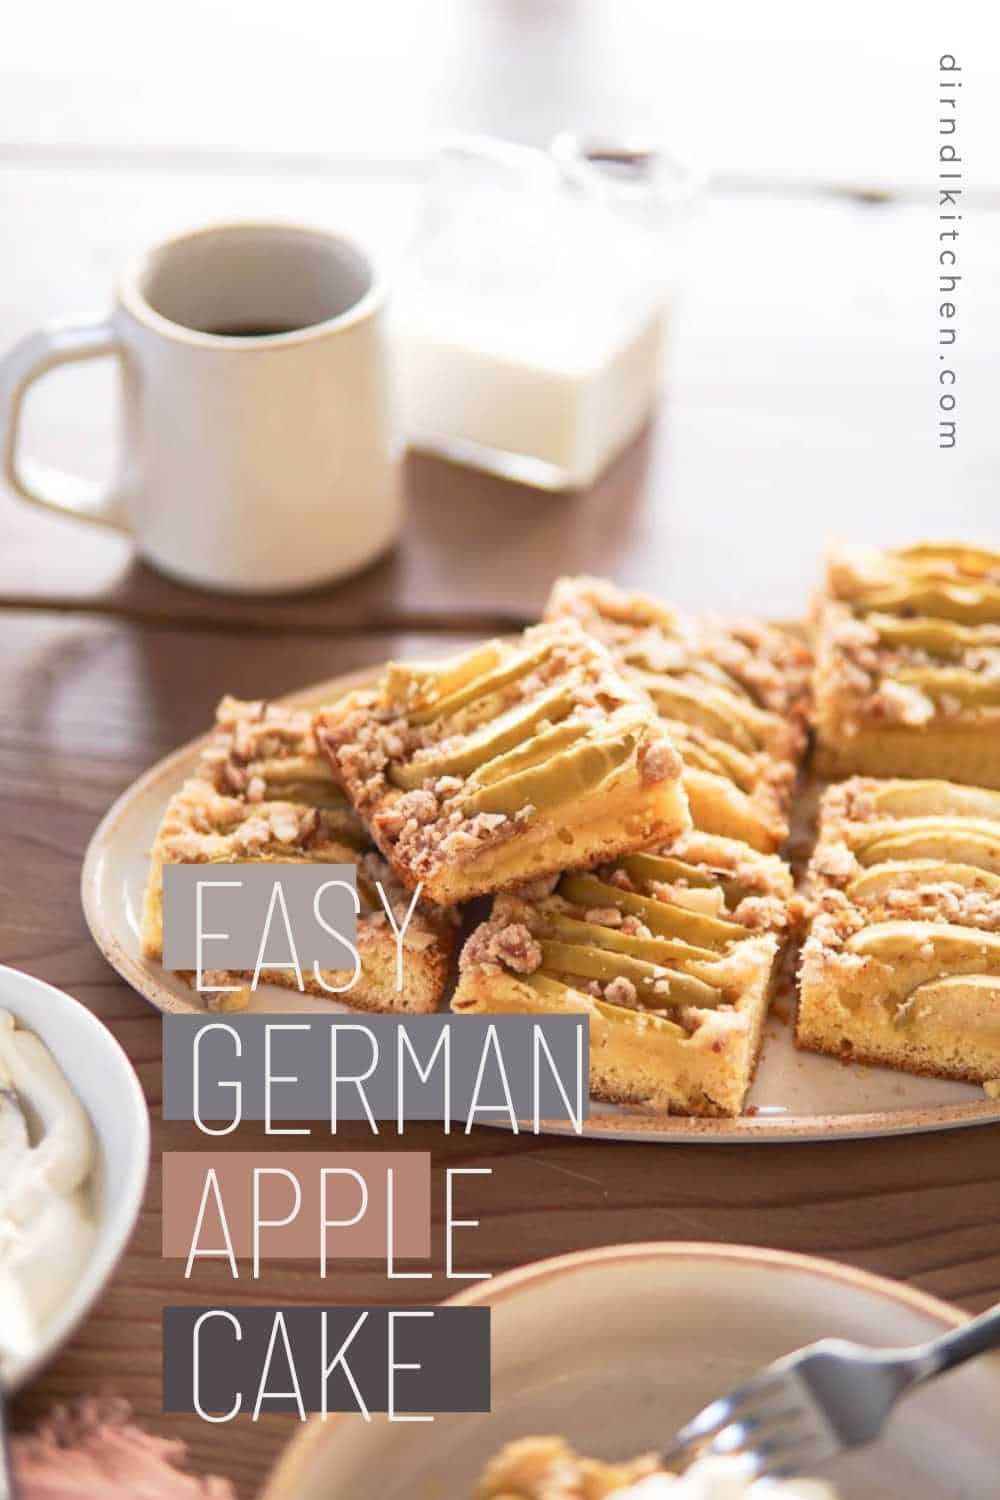 Easy German Apple Cake Pin Image